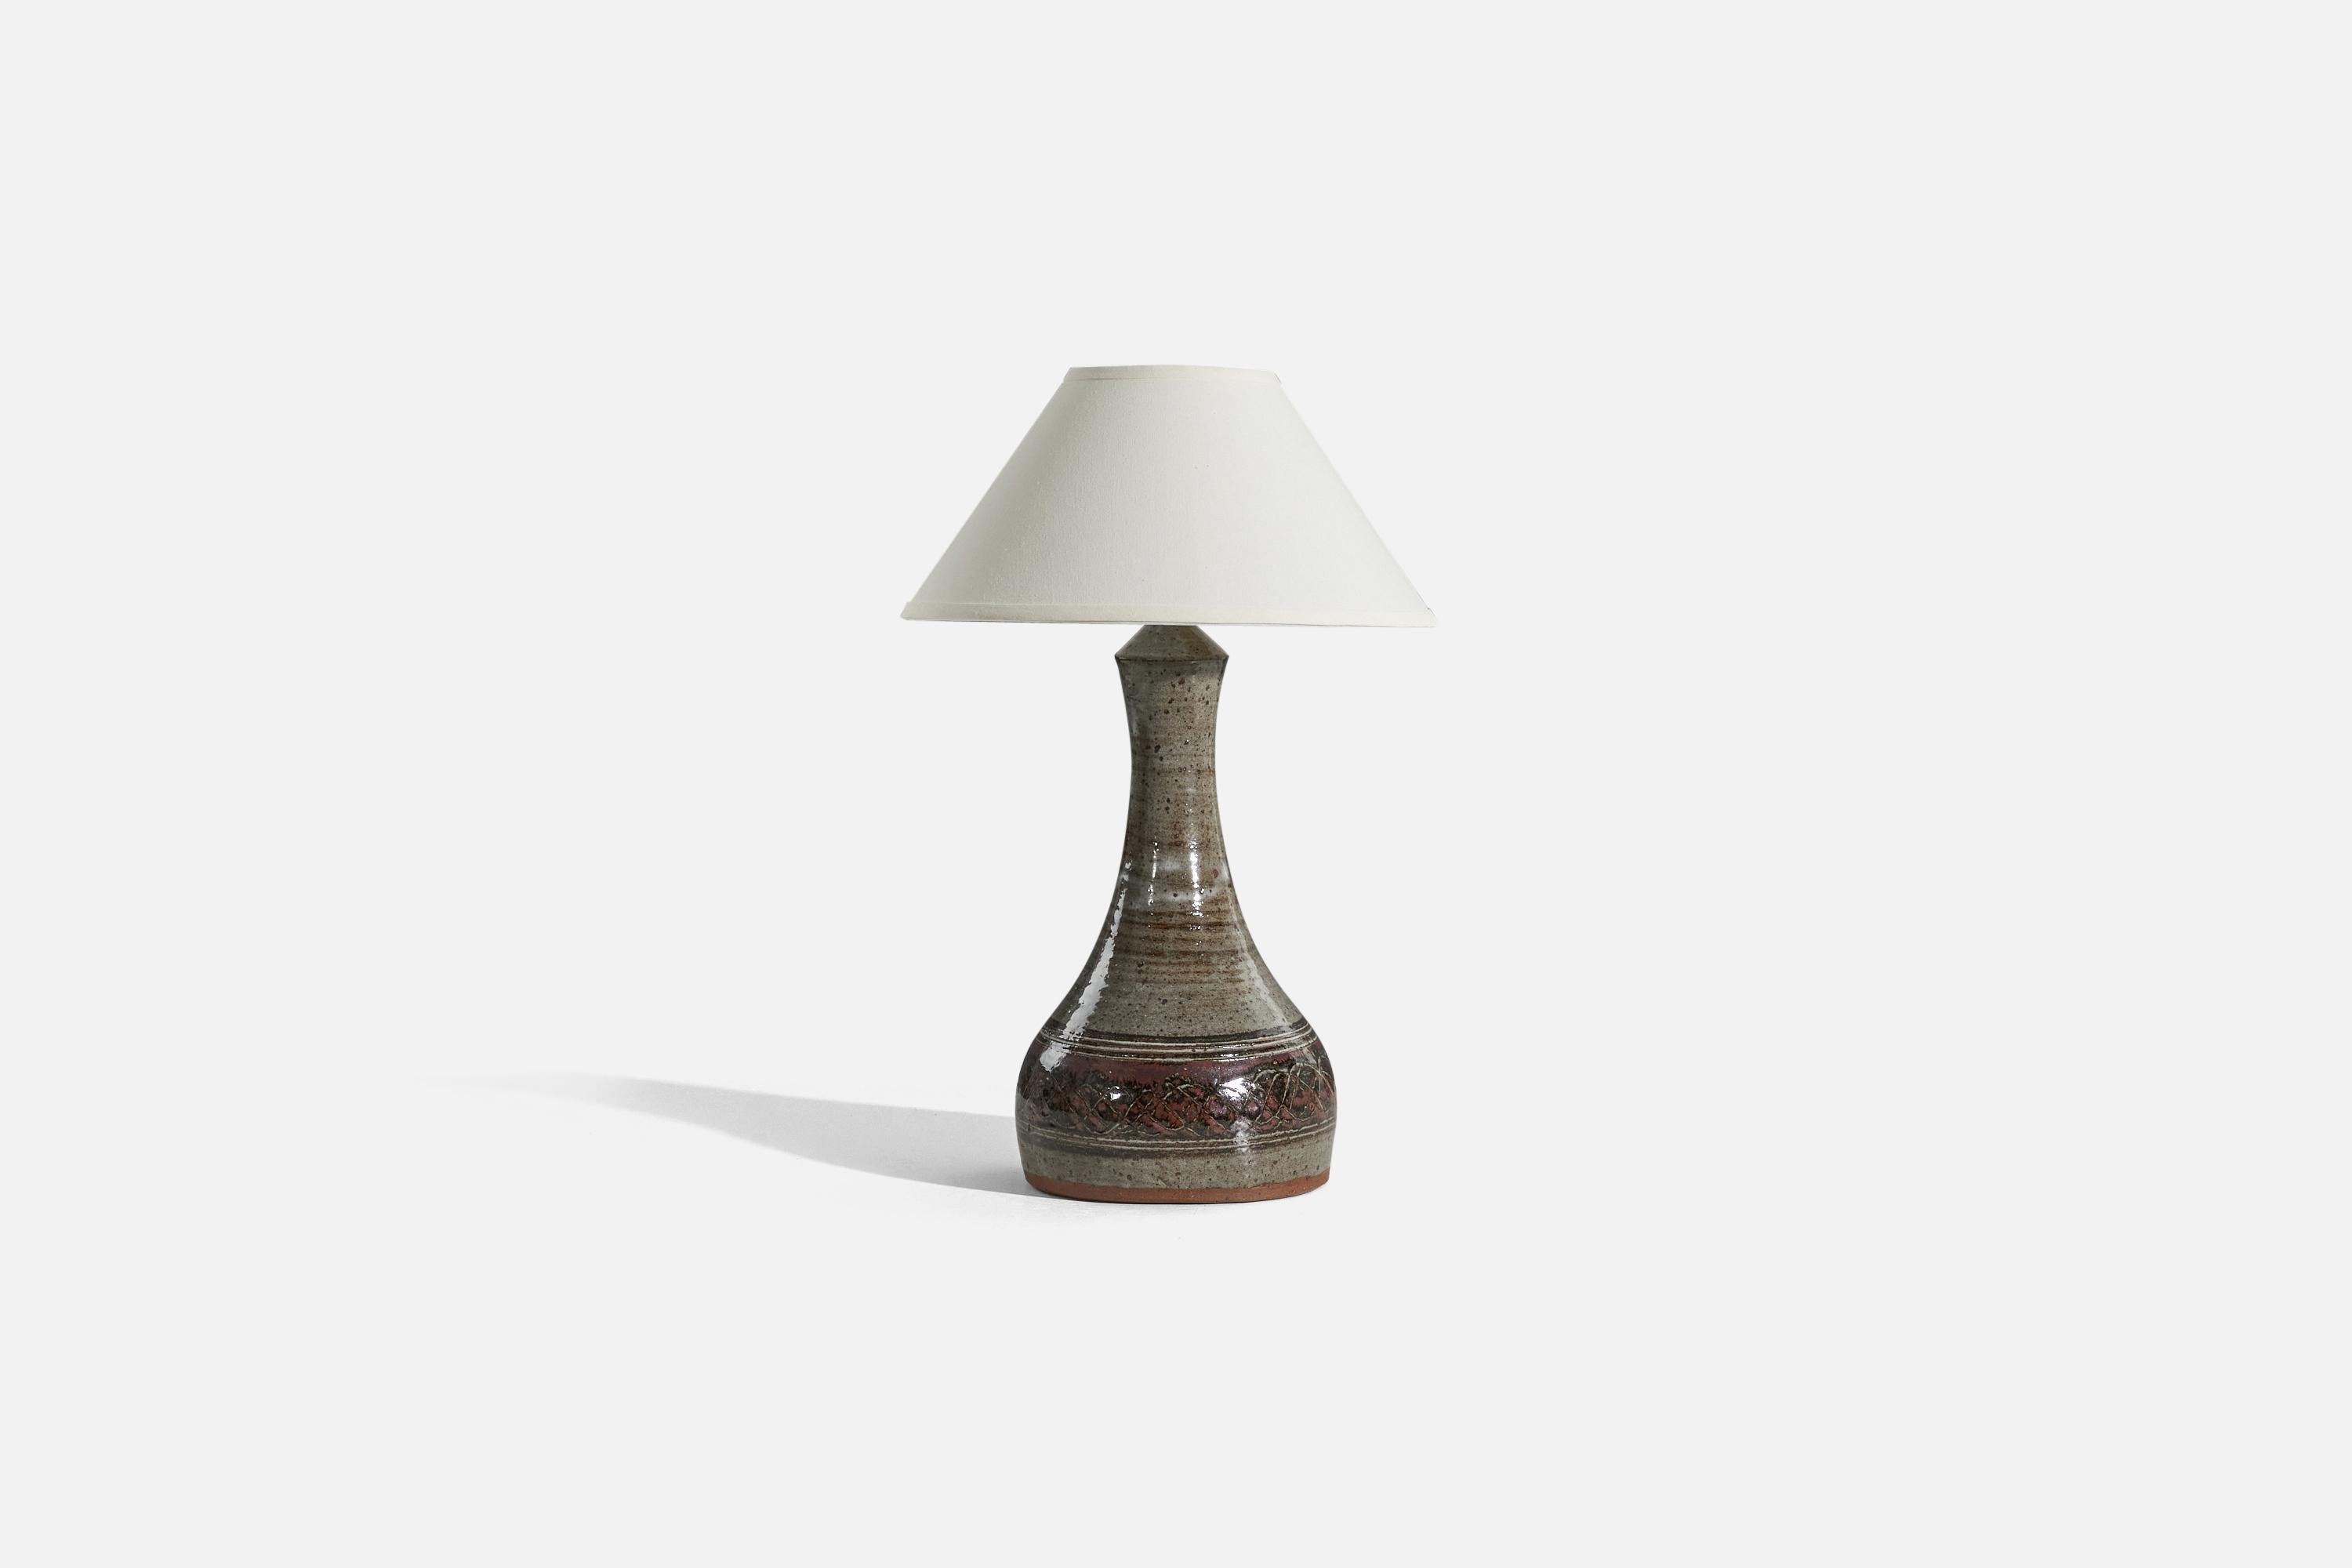 Lampe de table en grès émaillé gris et brun, conçue et produite par Helle Allpass, Danemark, années 1960.

Vendu sans abat-jour. 
Dimensions de la lampe (pouces) : 20,75 x 9 x 9 (H x L x P)
Dimensions de l'abat-jour (pouces) : 6.125 x 16,375 x